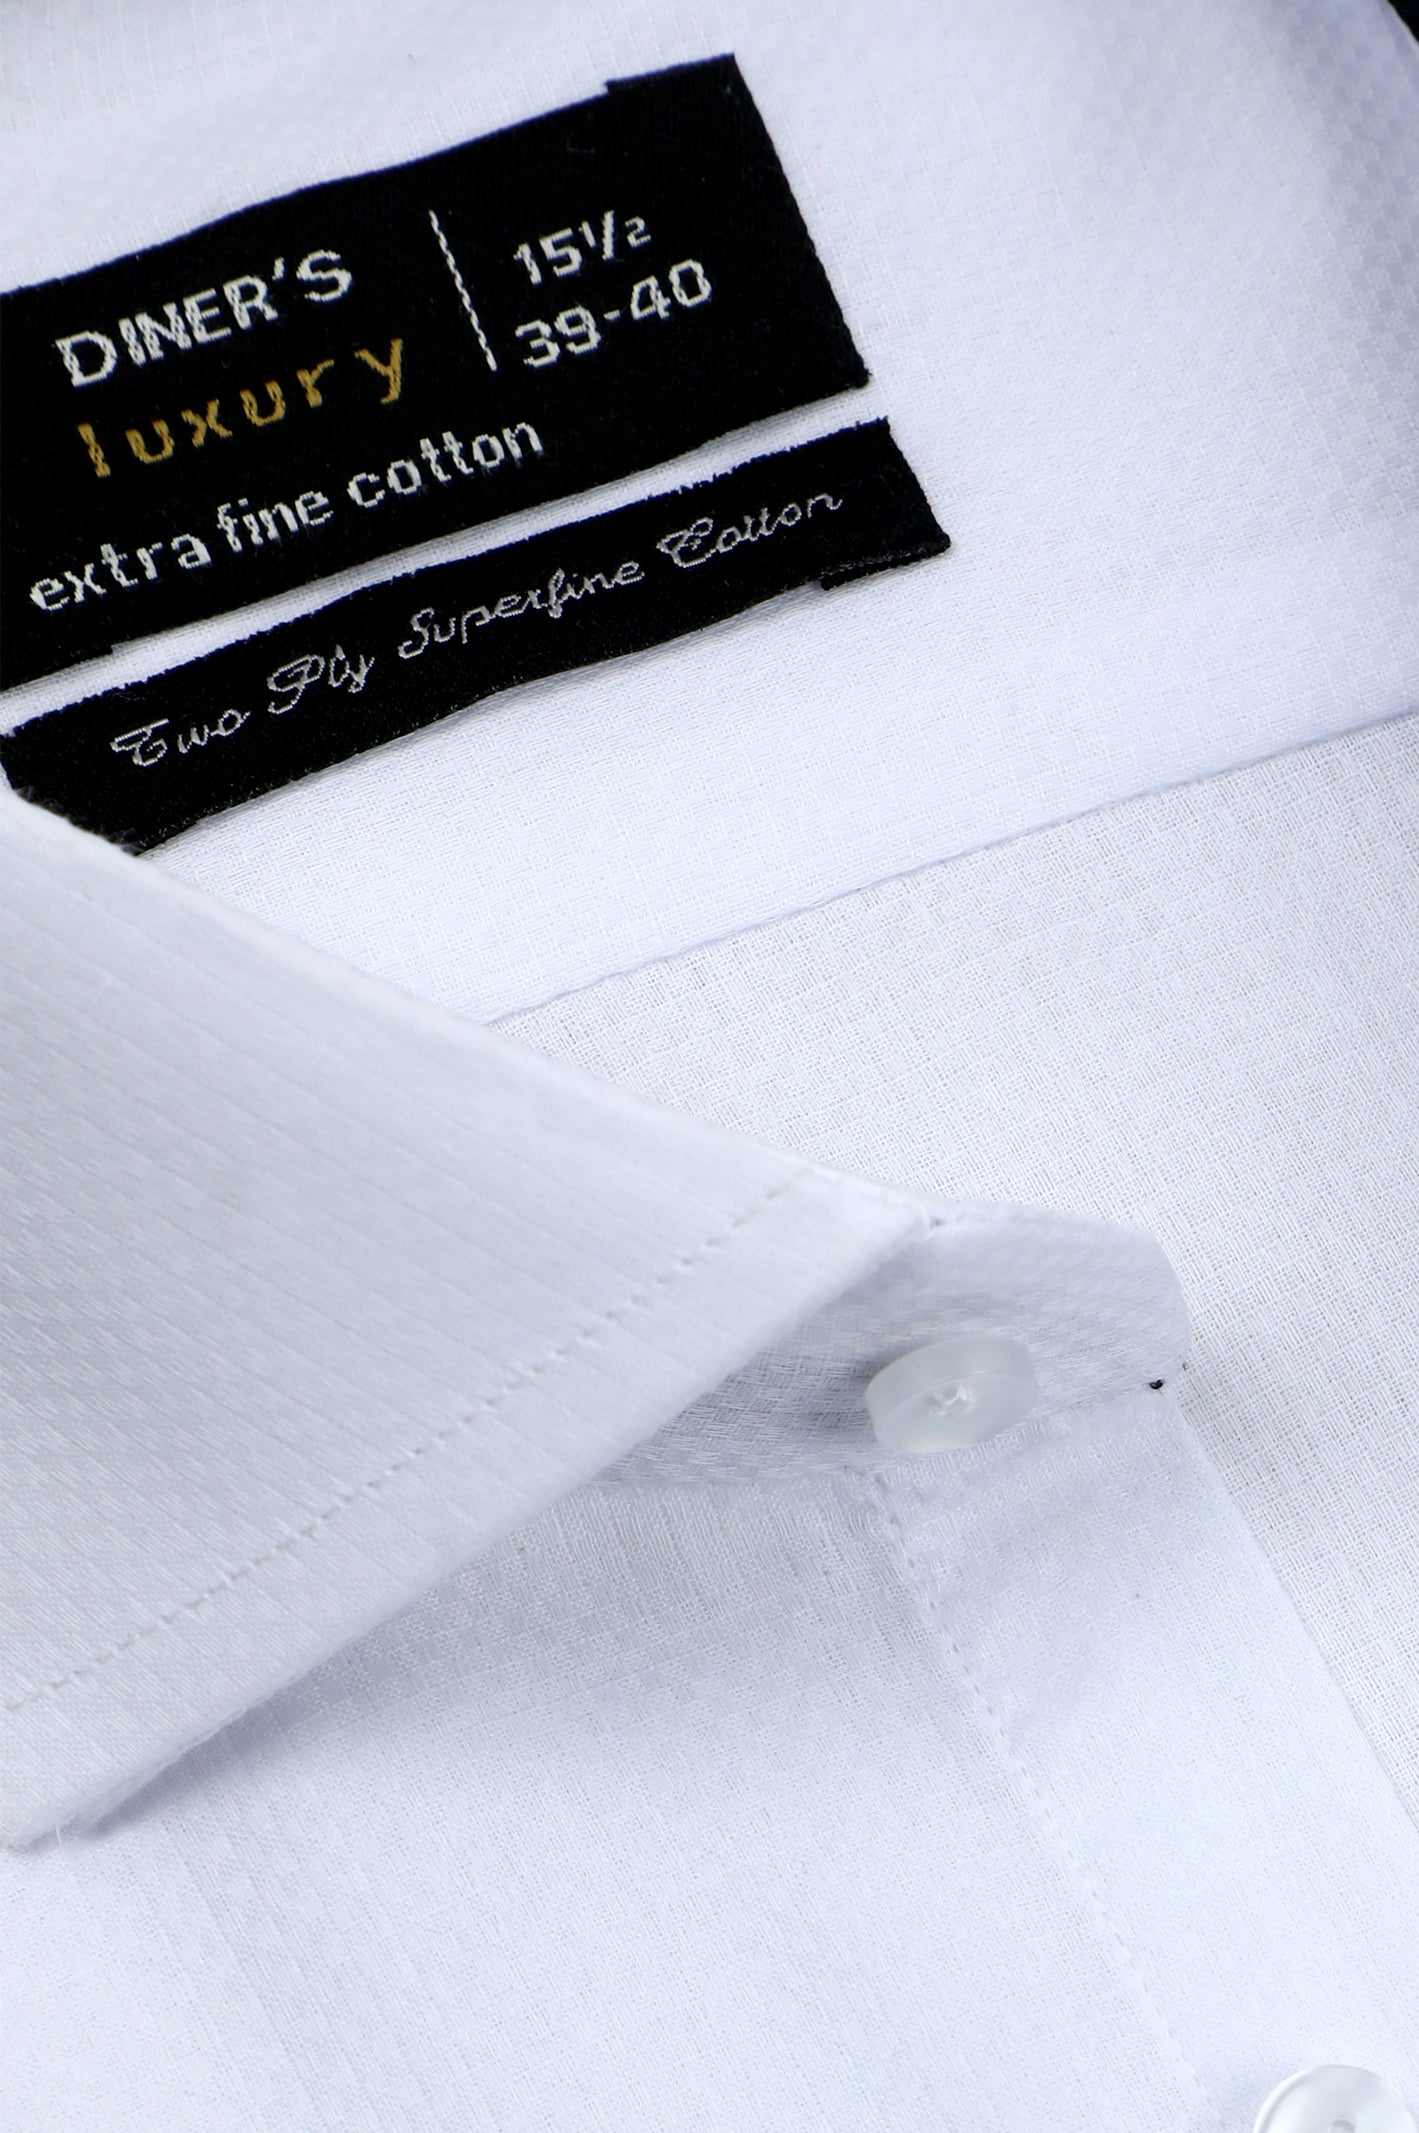 Formal Men Shirt SKU: AD25978-WHITE